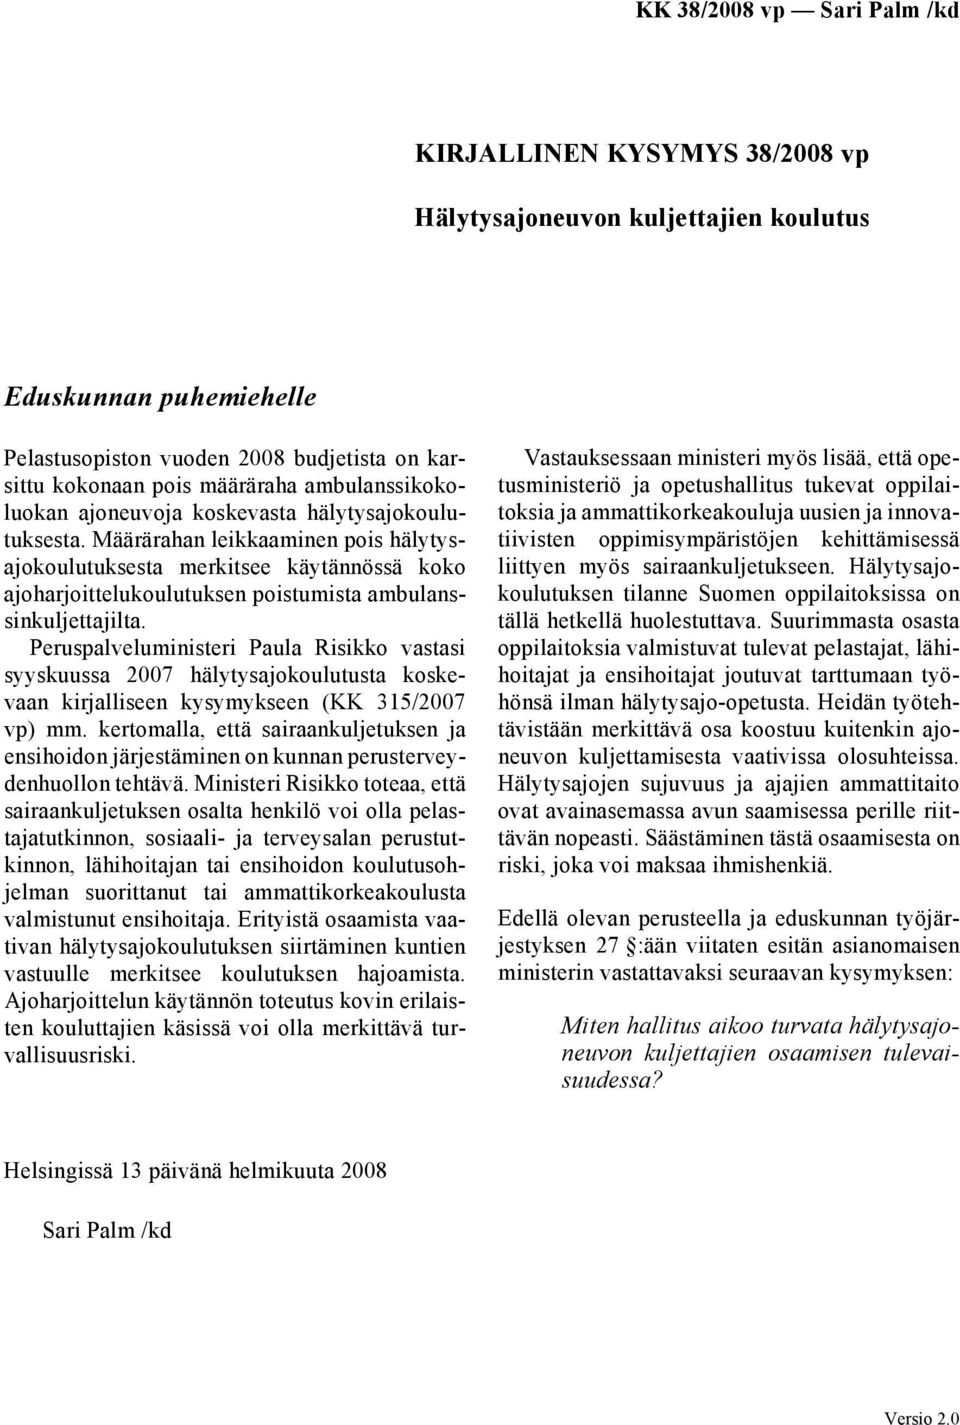 Peruspalveluministeri Paula Risikko vastasi syyskuussa 2007 hälytysajokoulutusta koskevaan kirjalliseen kysymykseen (KK 315/2007 vp) mm.